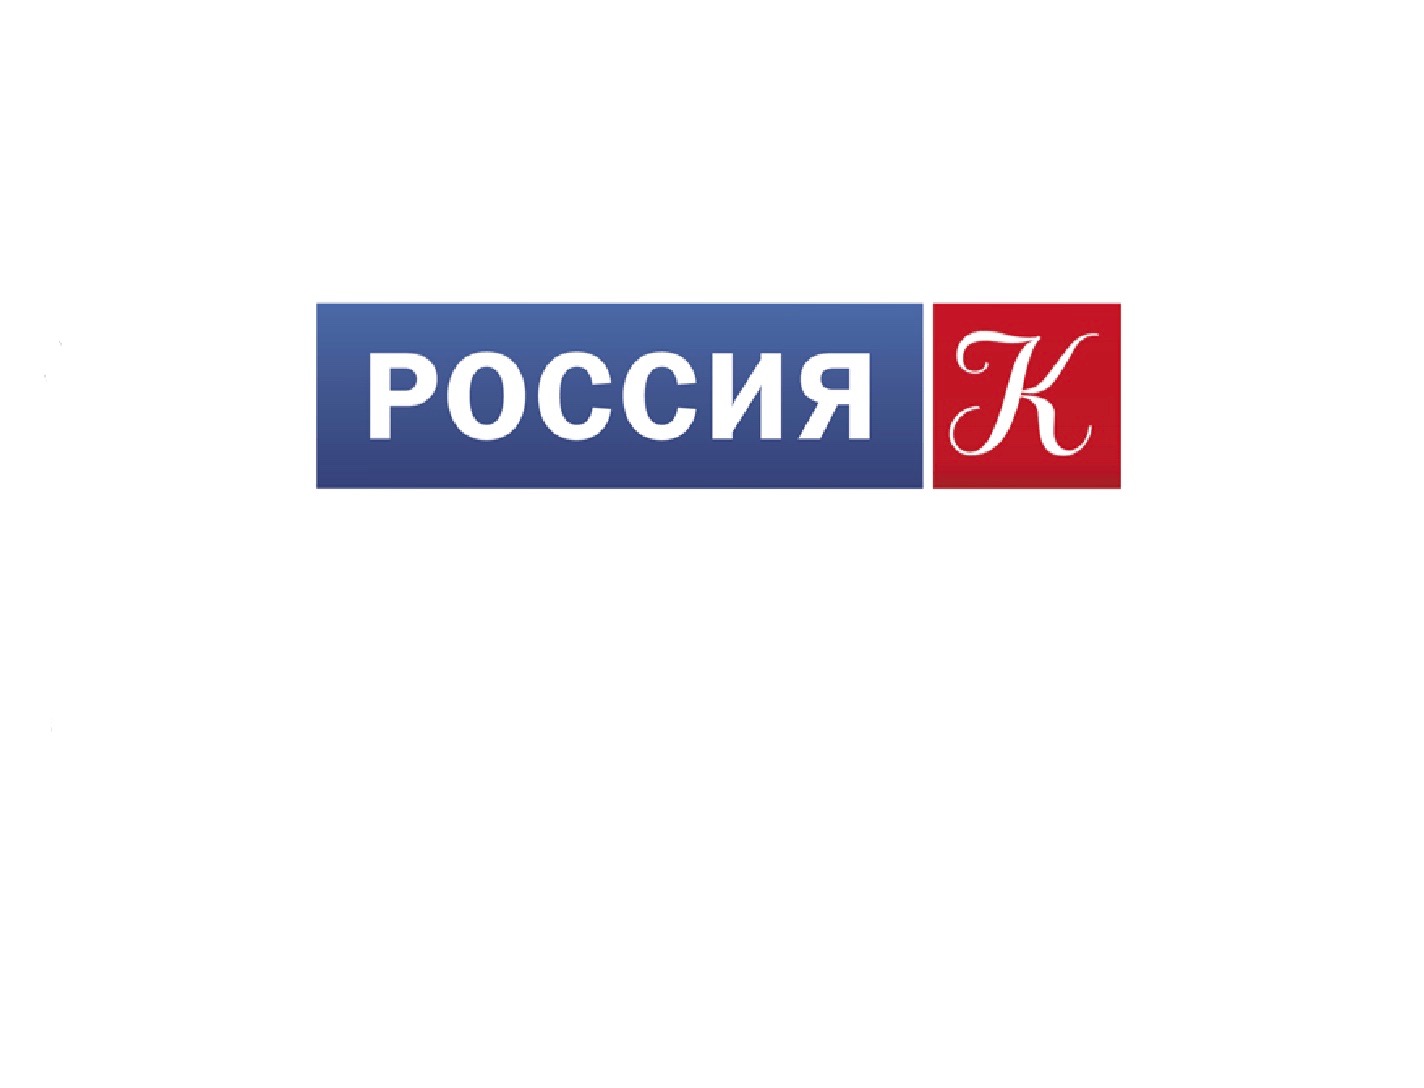 Россия 1 live. Россия 1 логотип. Россия 24. Логотип канала Россия культура.